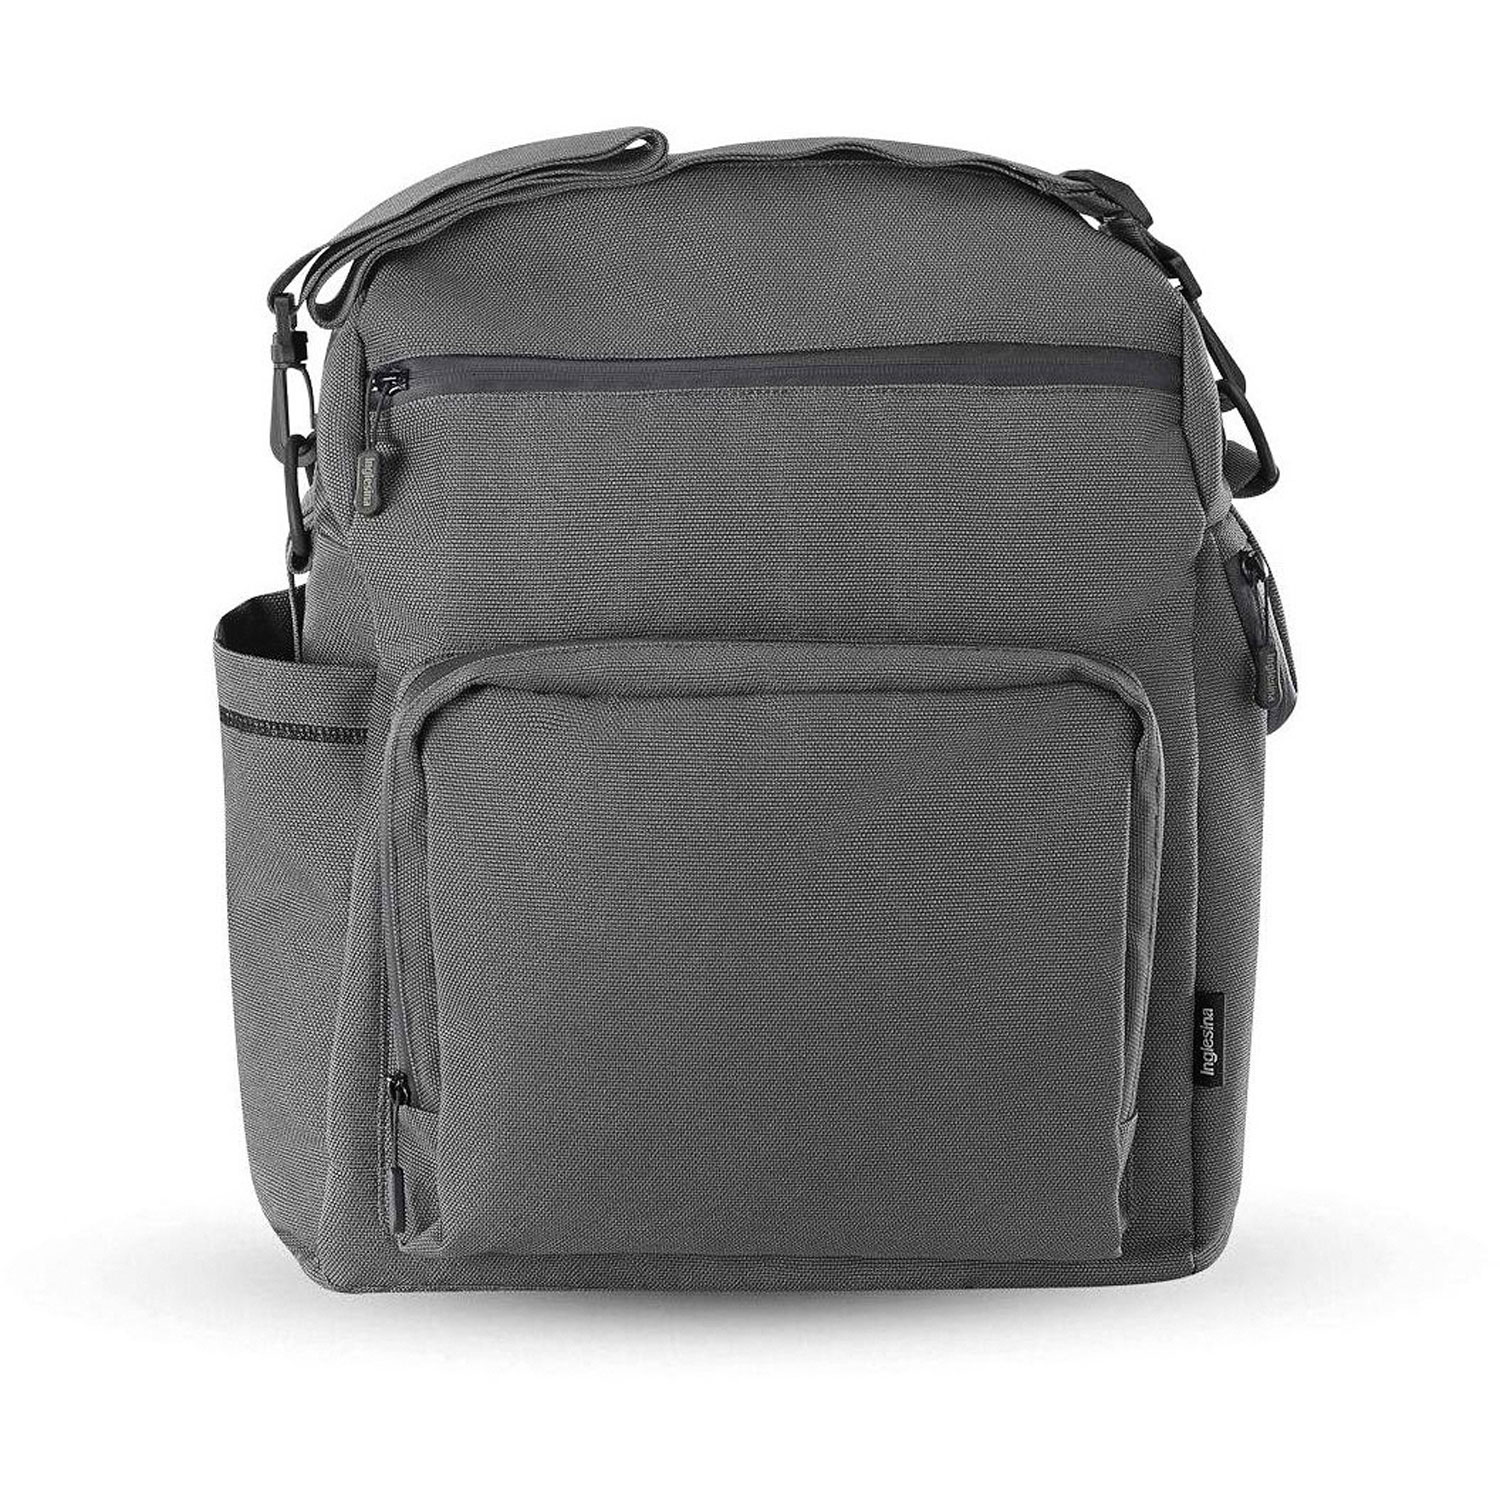 Сумка-рюкзак для коляски ADVENTURE BAG, цвет CHARCOAL GREY (2021) Inglesina сумка рюкзак для коляски adventure bag taiga green inglesina